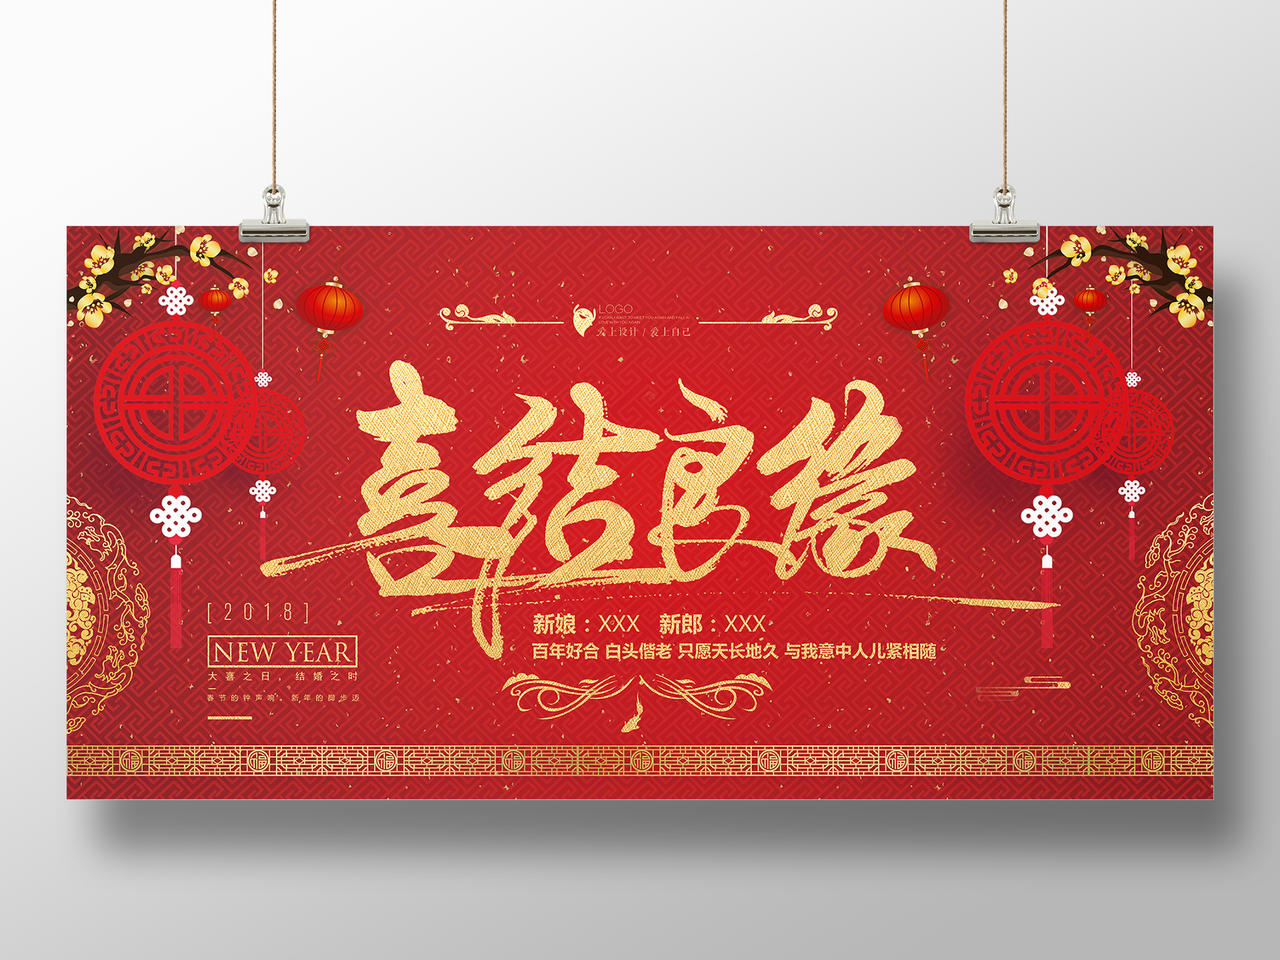 中式婚礼中国风喜结良缘婚礼婚庆结婚海报